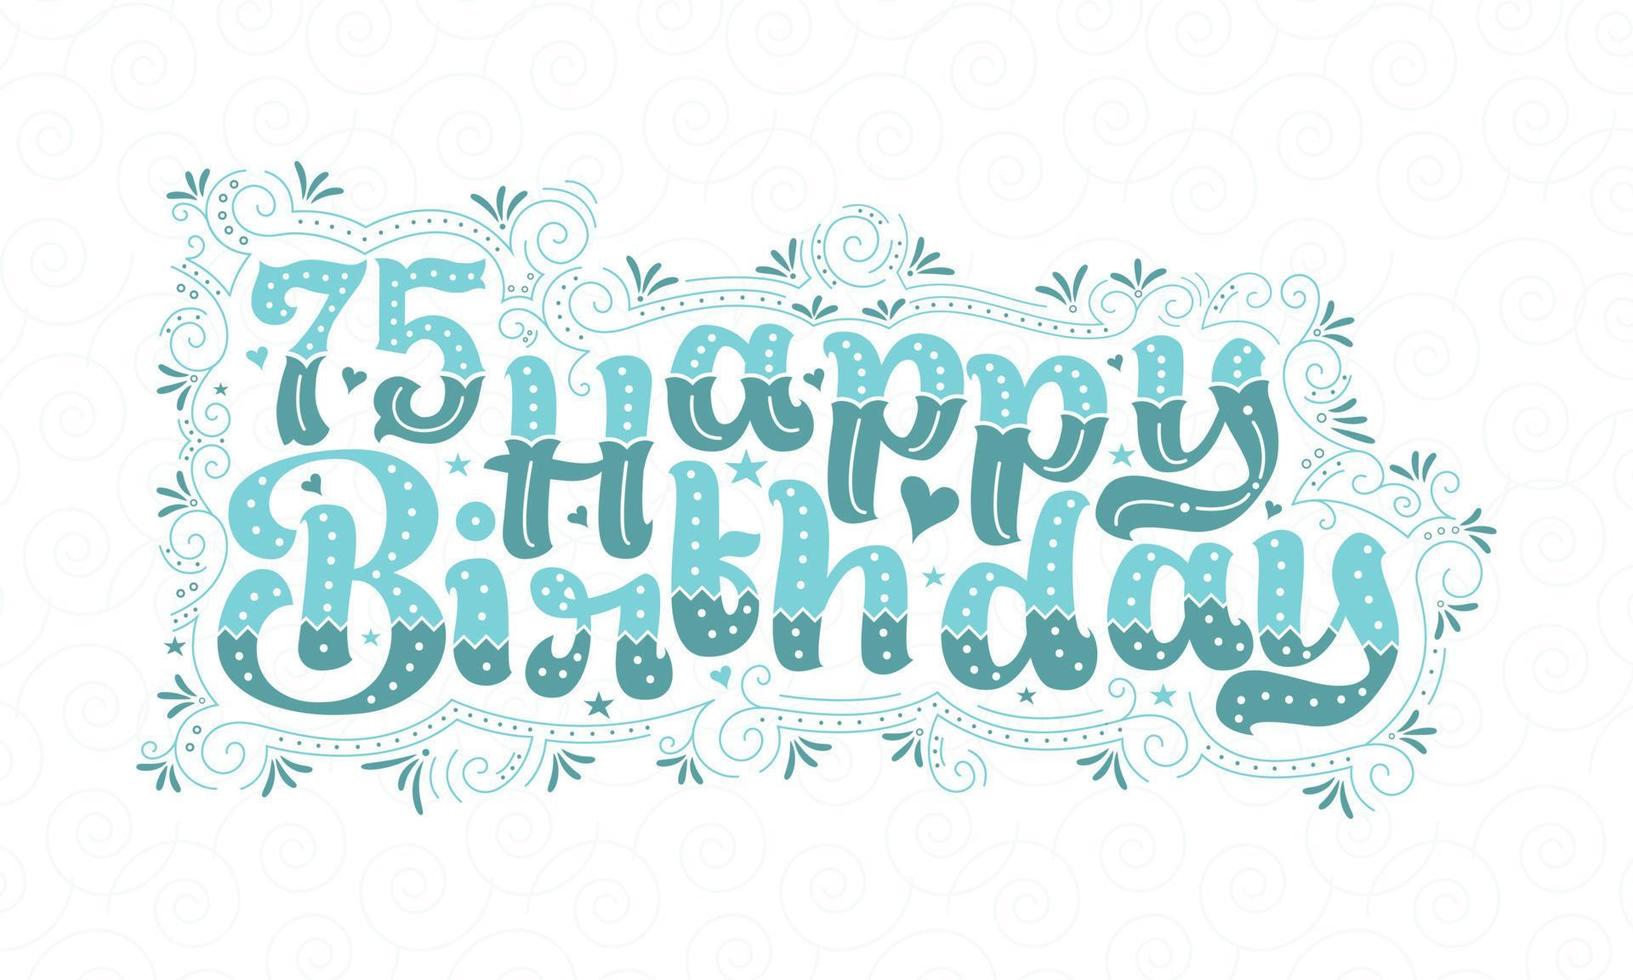 75. alles Gute zum Geburtstag Schriftzug, 75 Jahre Geburtstag schönes Typografie-Design mit Aquapunkten, Linien und Blättern. vektor